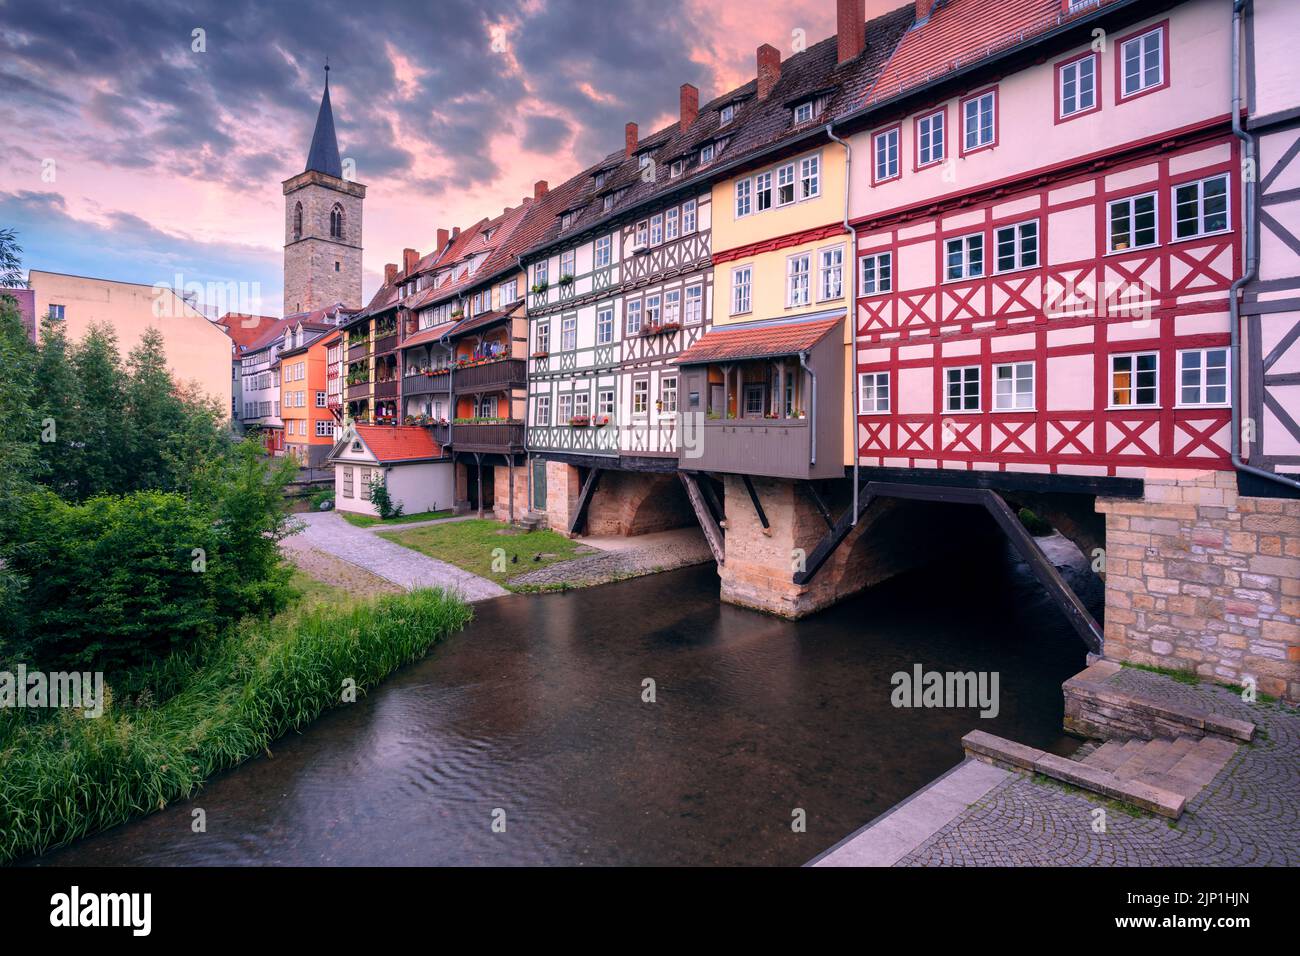 Erfurt, Germania. Immagine del centro di Erfurt, Germania, con il Merchant's Bridge all'alba estiva. Foto Stock